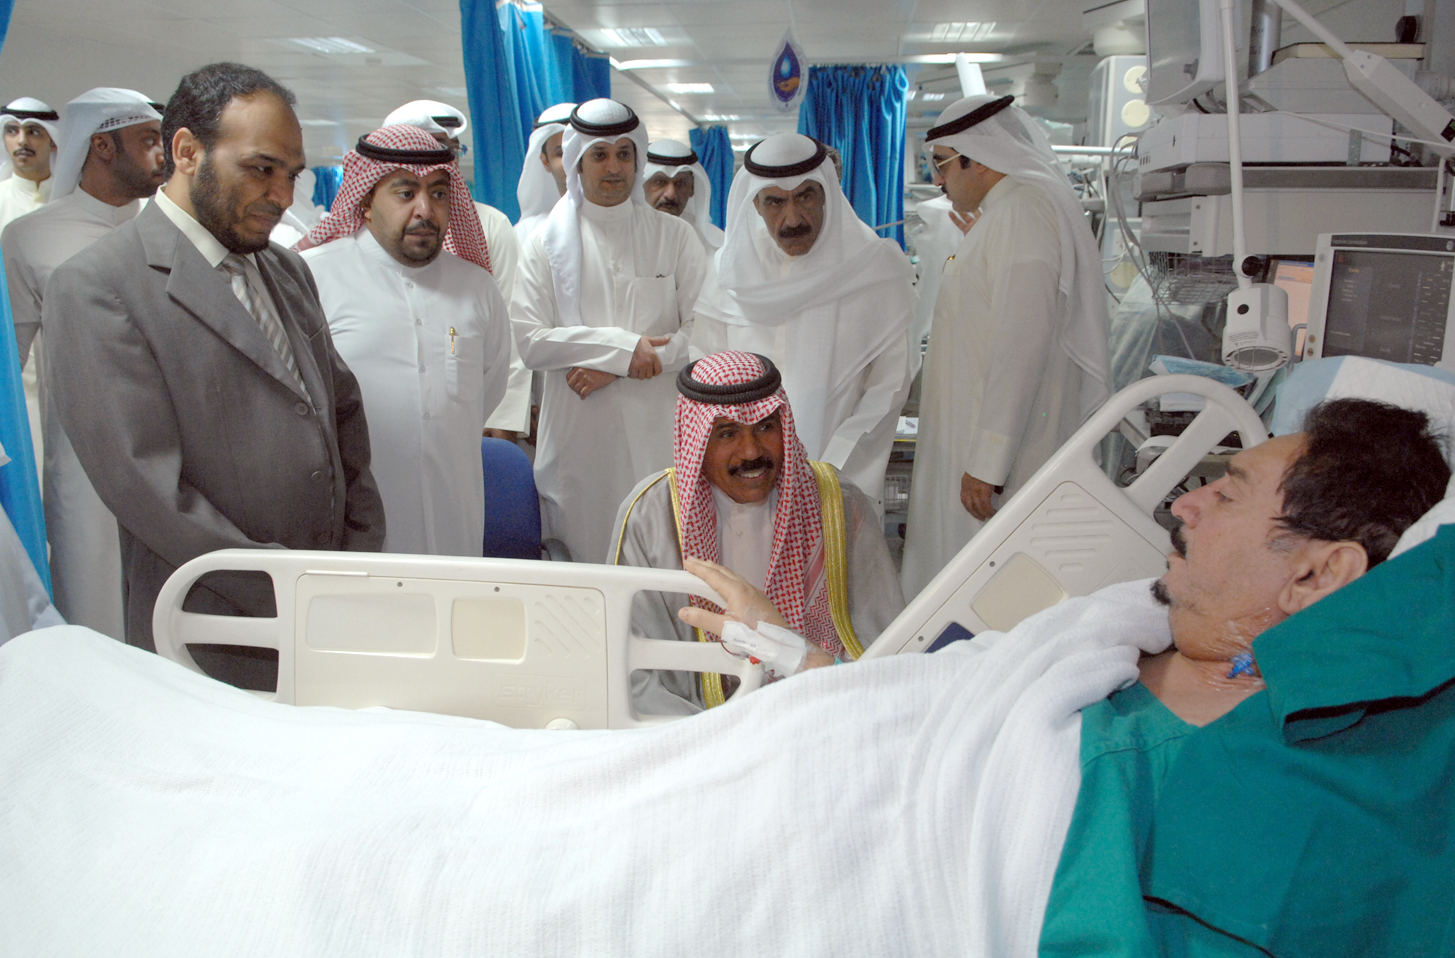 His Highness the Crown Prince Sheikh Nawaf Al-Ahmad Al-Jaber Al-Sabah visited Fasial Bander Watban Al-Duwiesh at Farwaniya Hospital